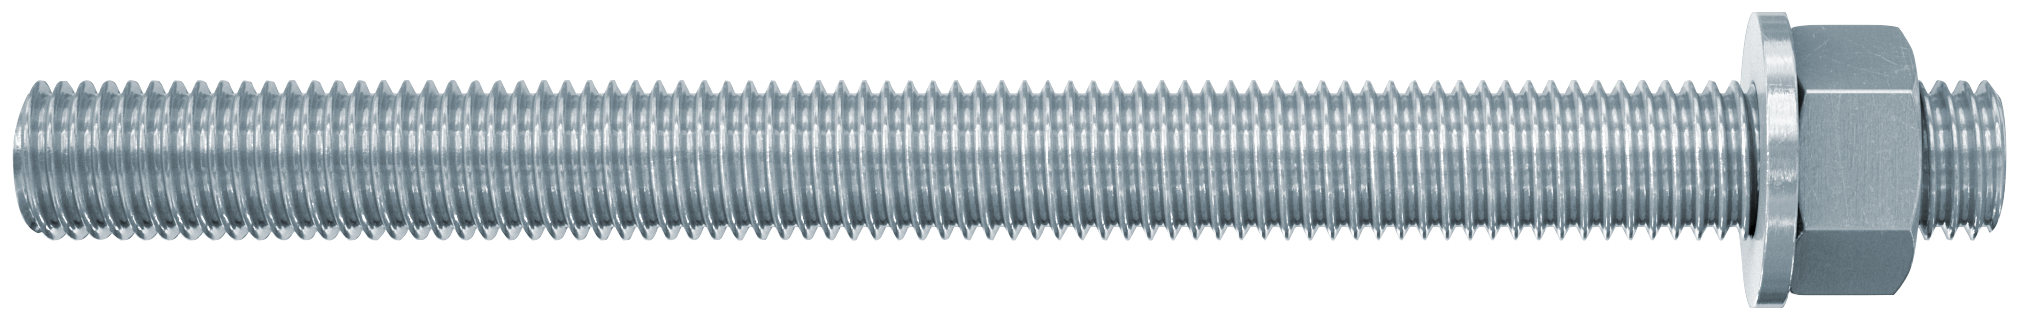 fischer Barre filettate in acciaio FIS A M10X190 cl. 8.8 (1 Pz.) Barra filettata in acciaio zincato con classe di resistenza 8.8, con taglio dritto, dado e rosetta.